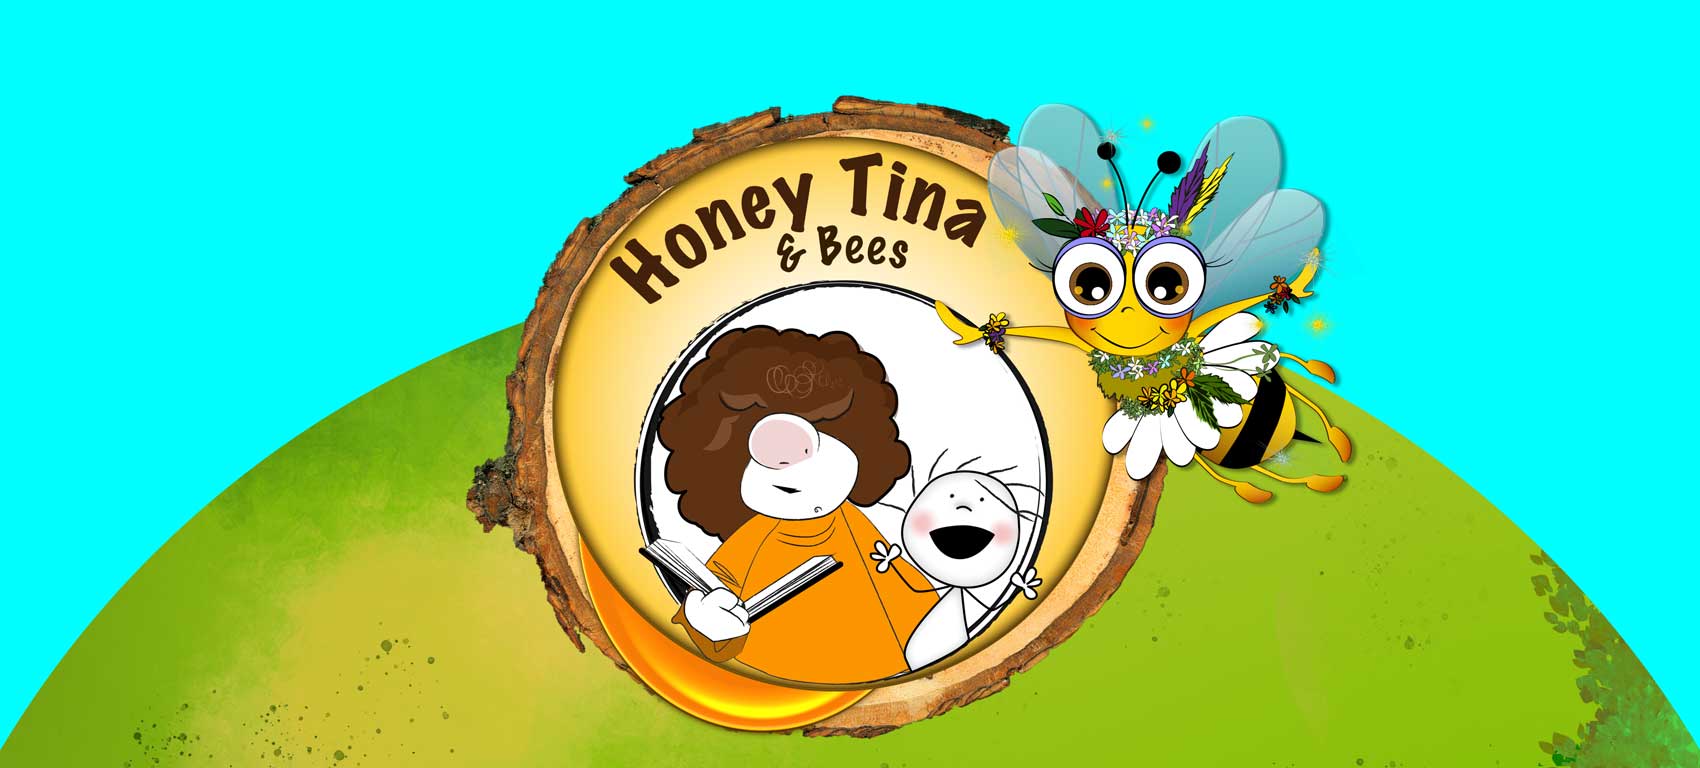 Cuento-Abejas-Honey-Tina-cover